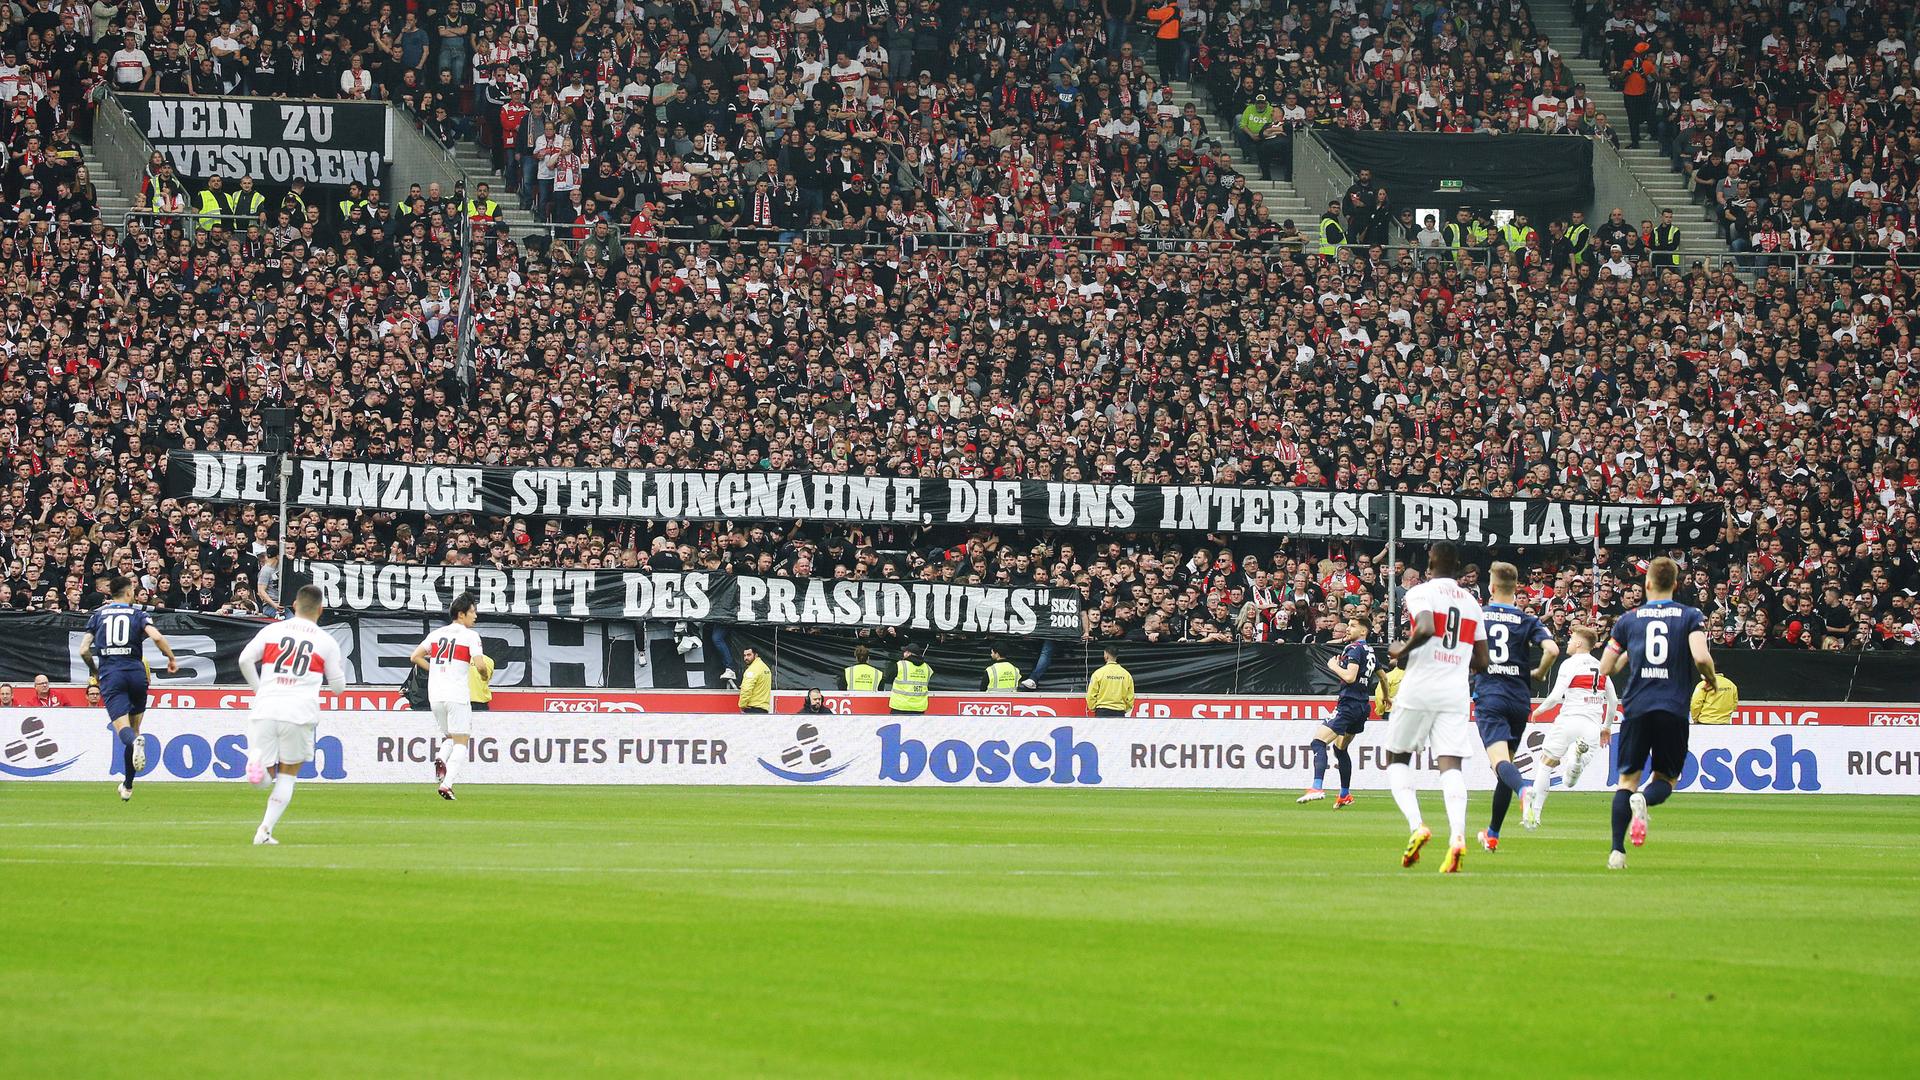 Die Fanszene des VfB Stuttgart zeigen im Spiel gegen den 1. FC Heidenheim ein Banner mit der Aufschrift: "Die einzige Stellungnahme, die uns interessiert, lautet: "Rücktritt des Präsidiums".